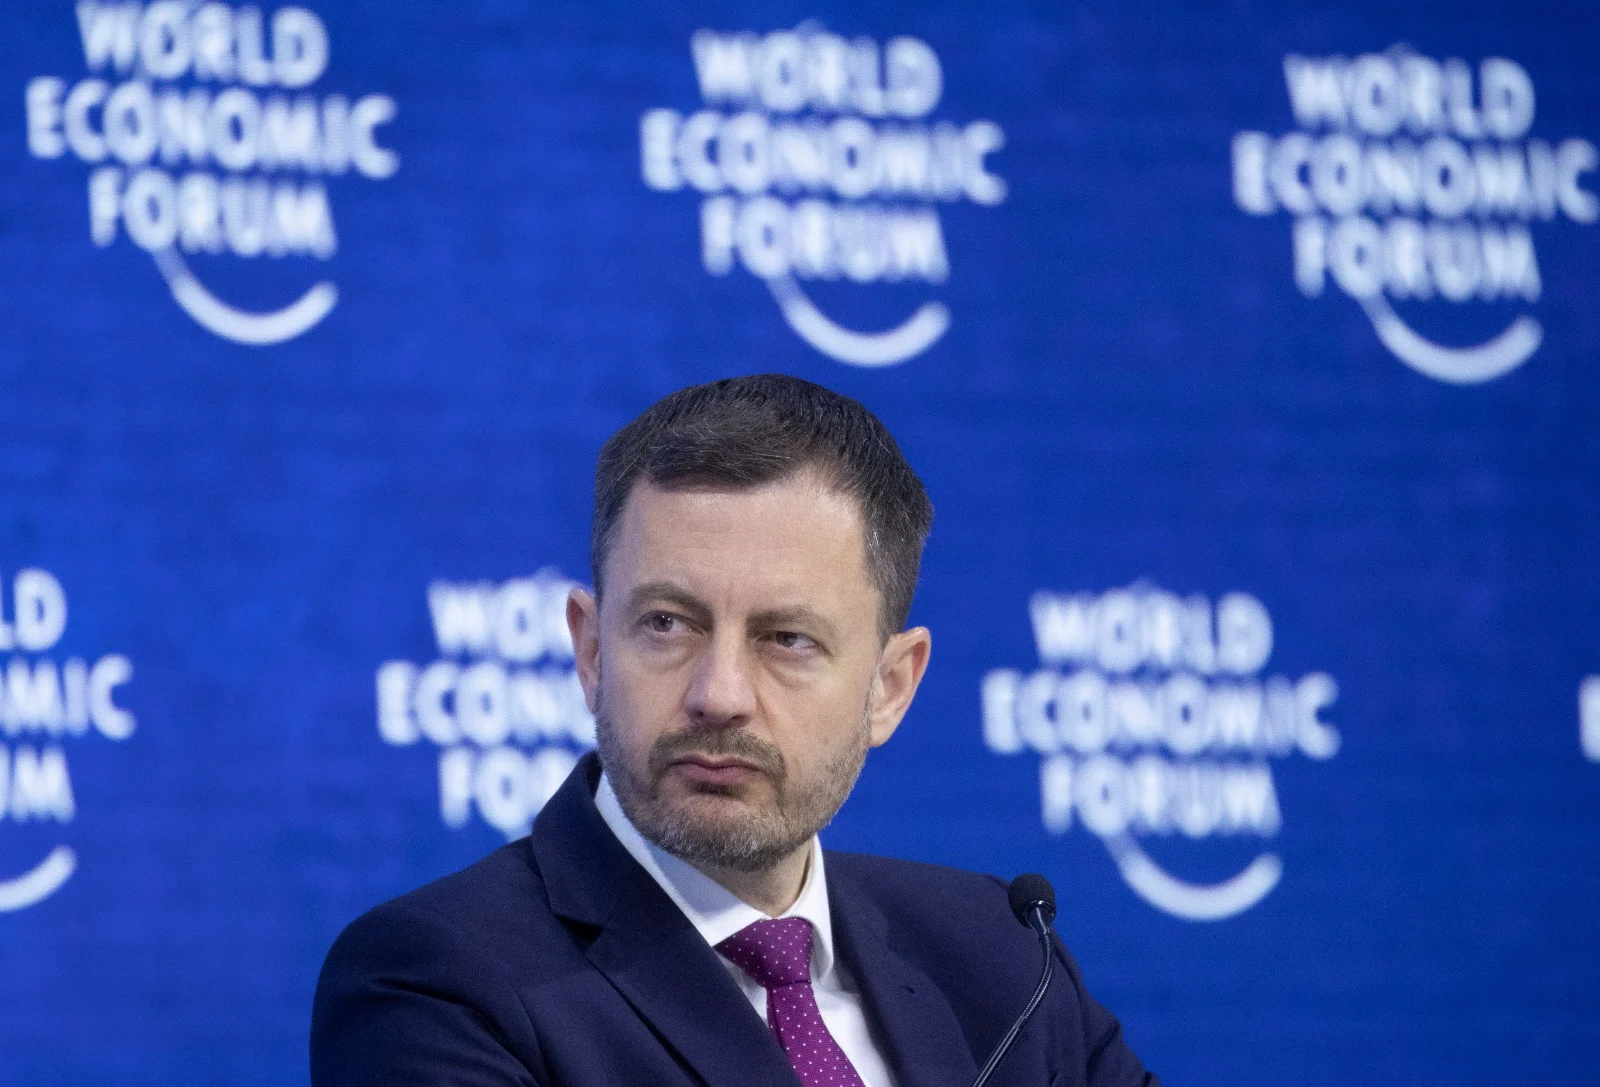 ראש ממשלת סלובקיה אדוארד הגר בפורום הכלכלה העולמי בדאבוס